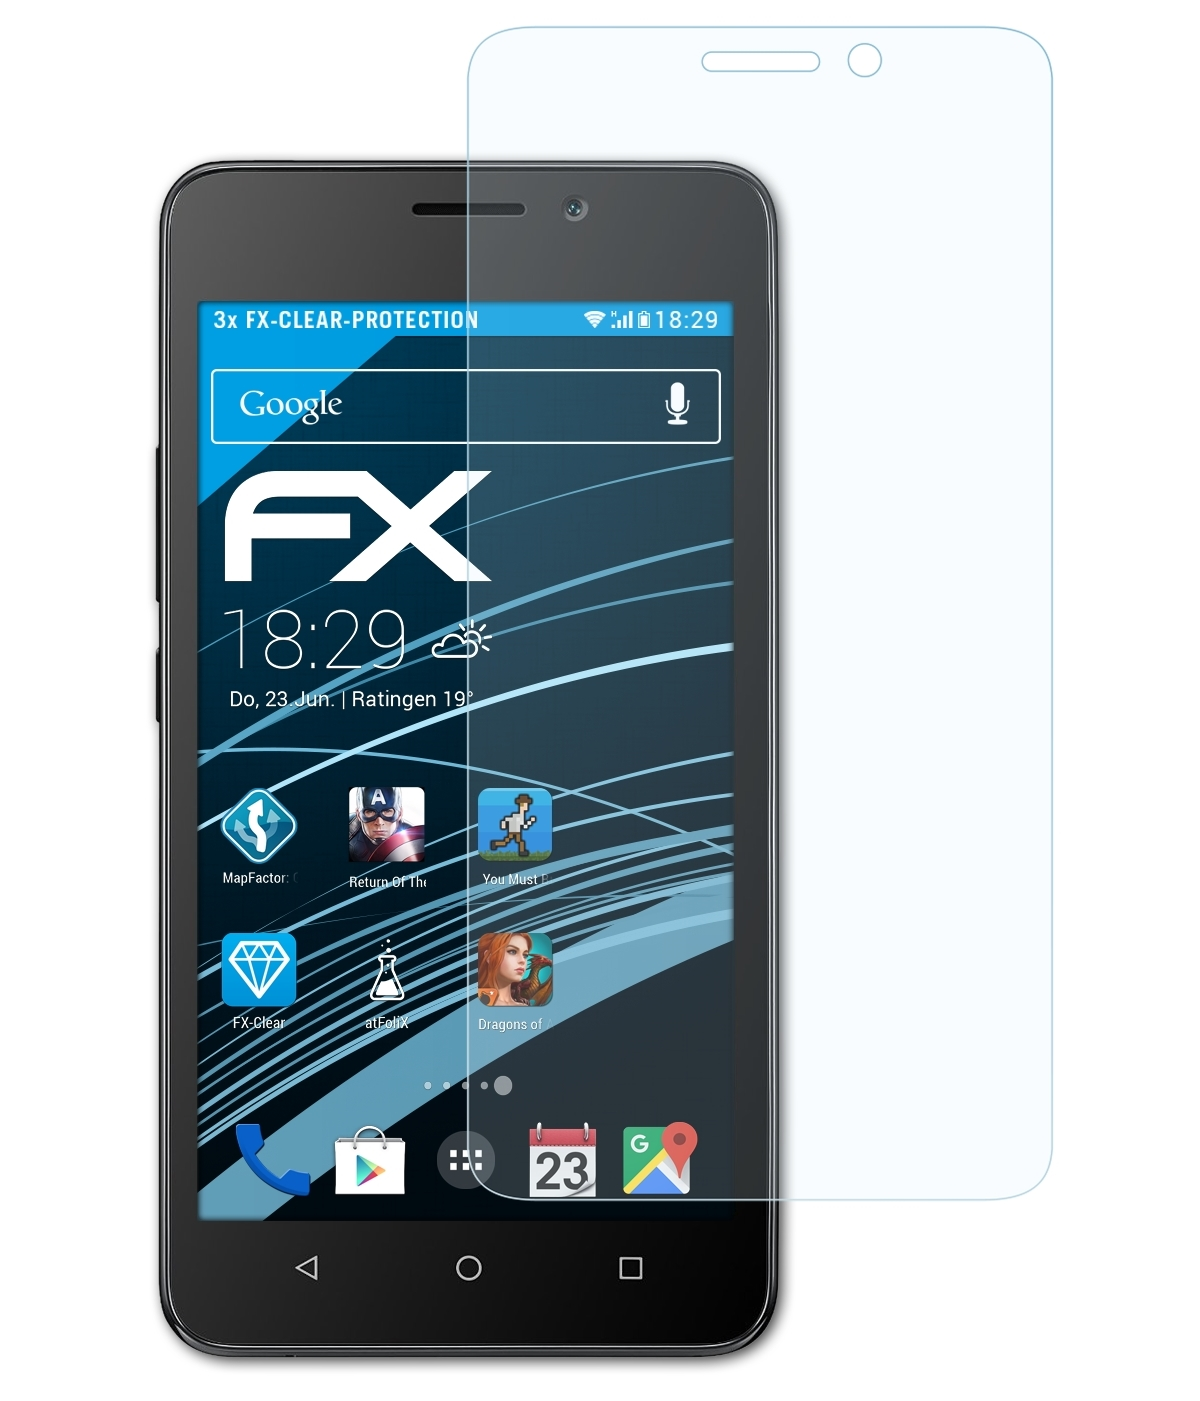 Huawei 3x ATFOLIX Displayschutz(für Y635) FX-Clear